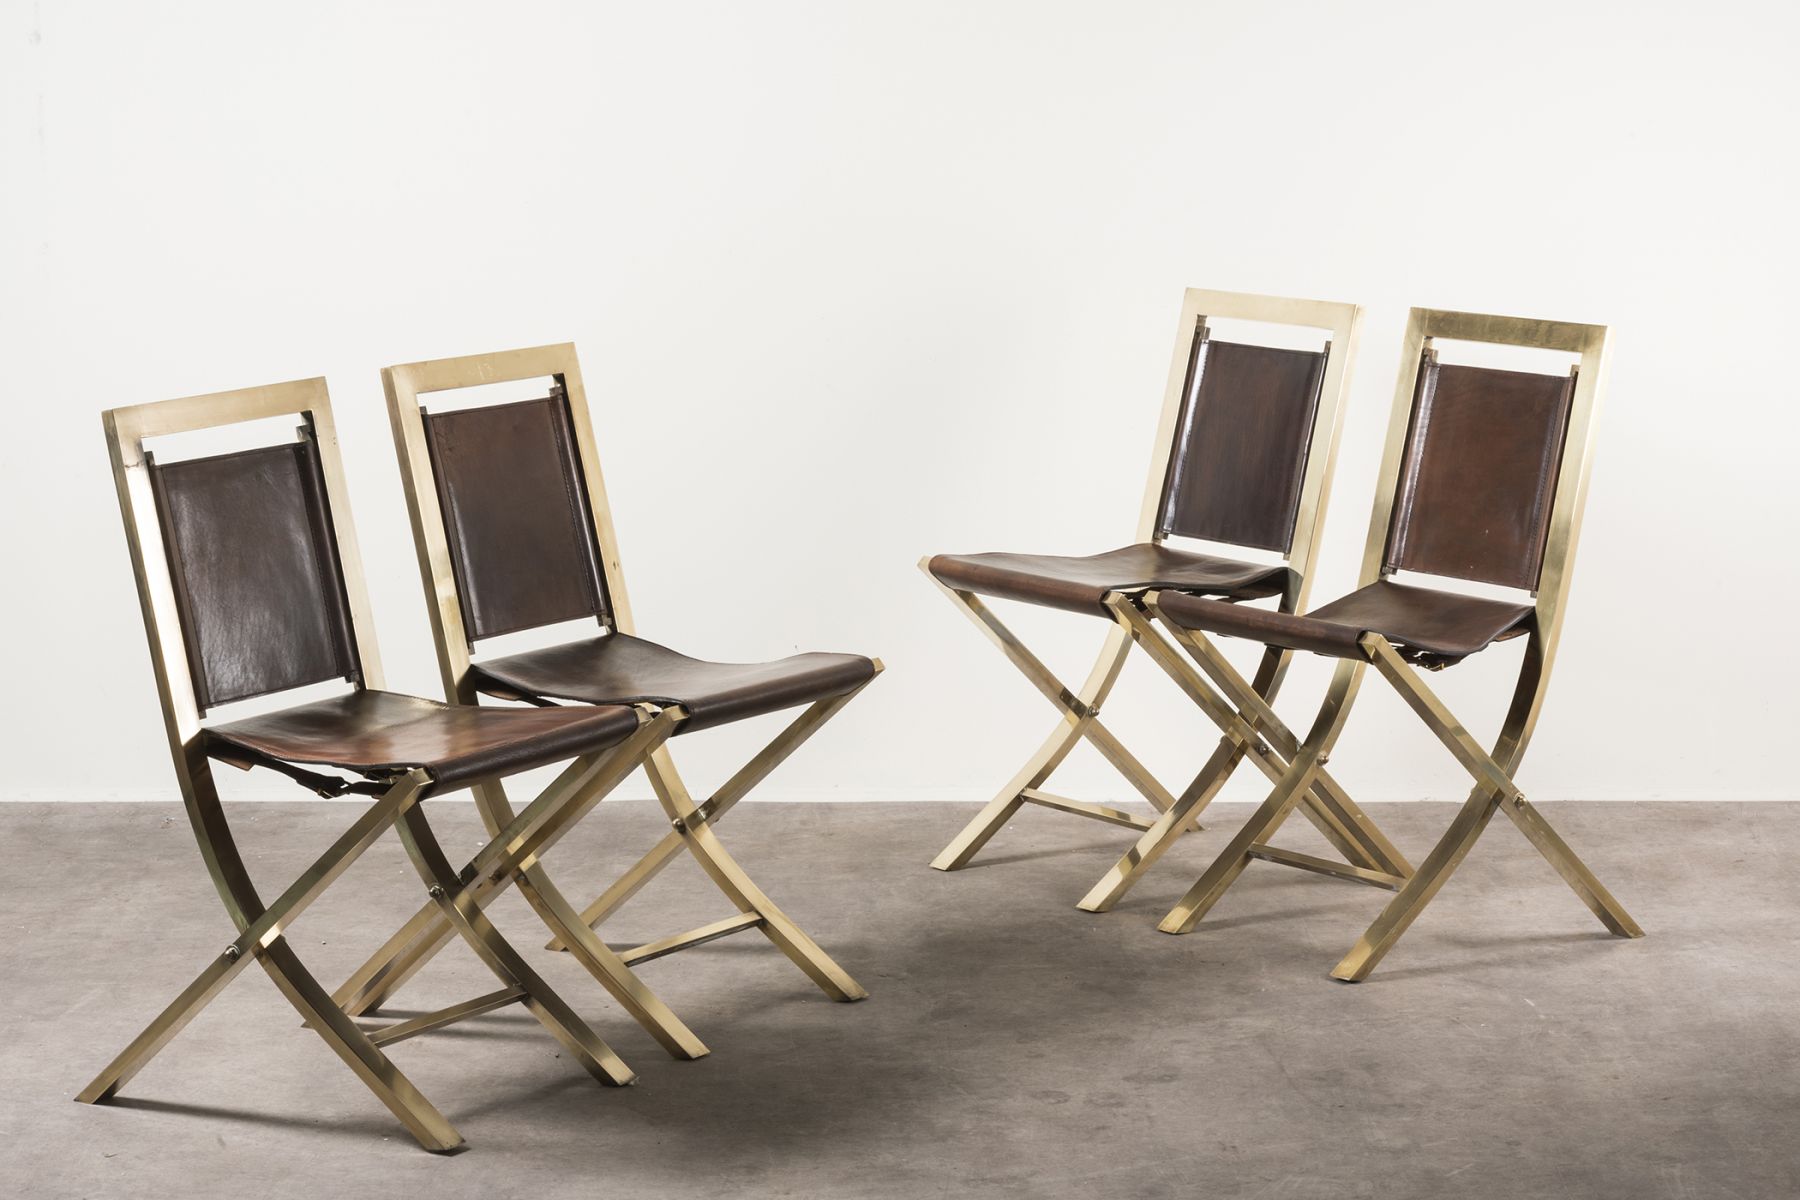 Four chairs Mod. Sedia'73  Gabriella Crespi pic-1